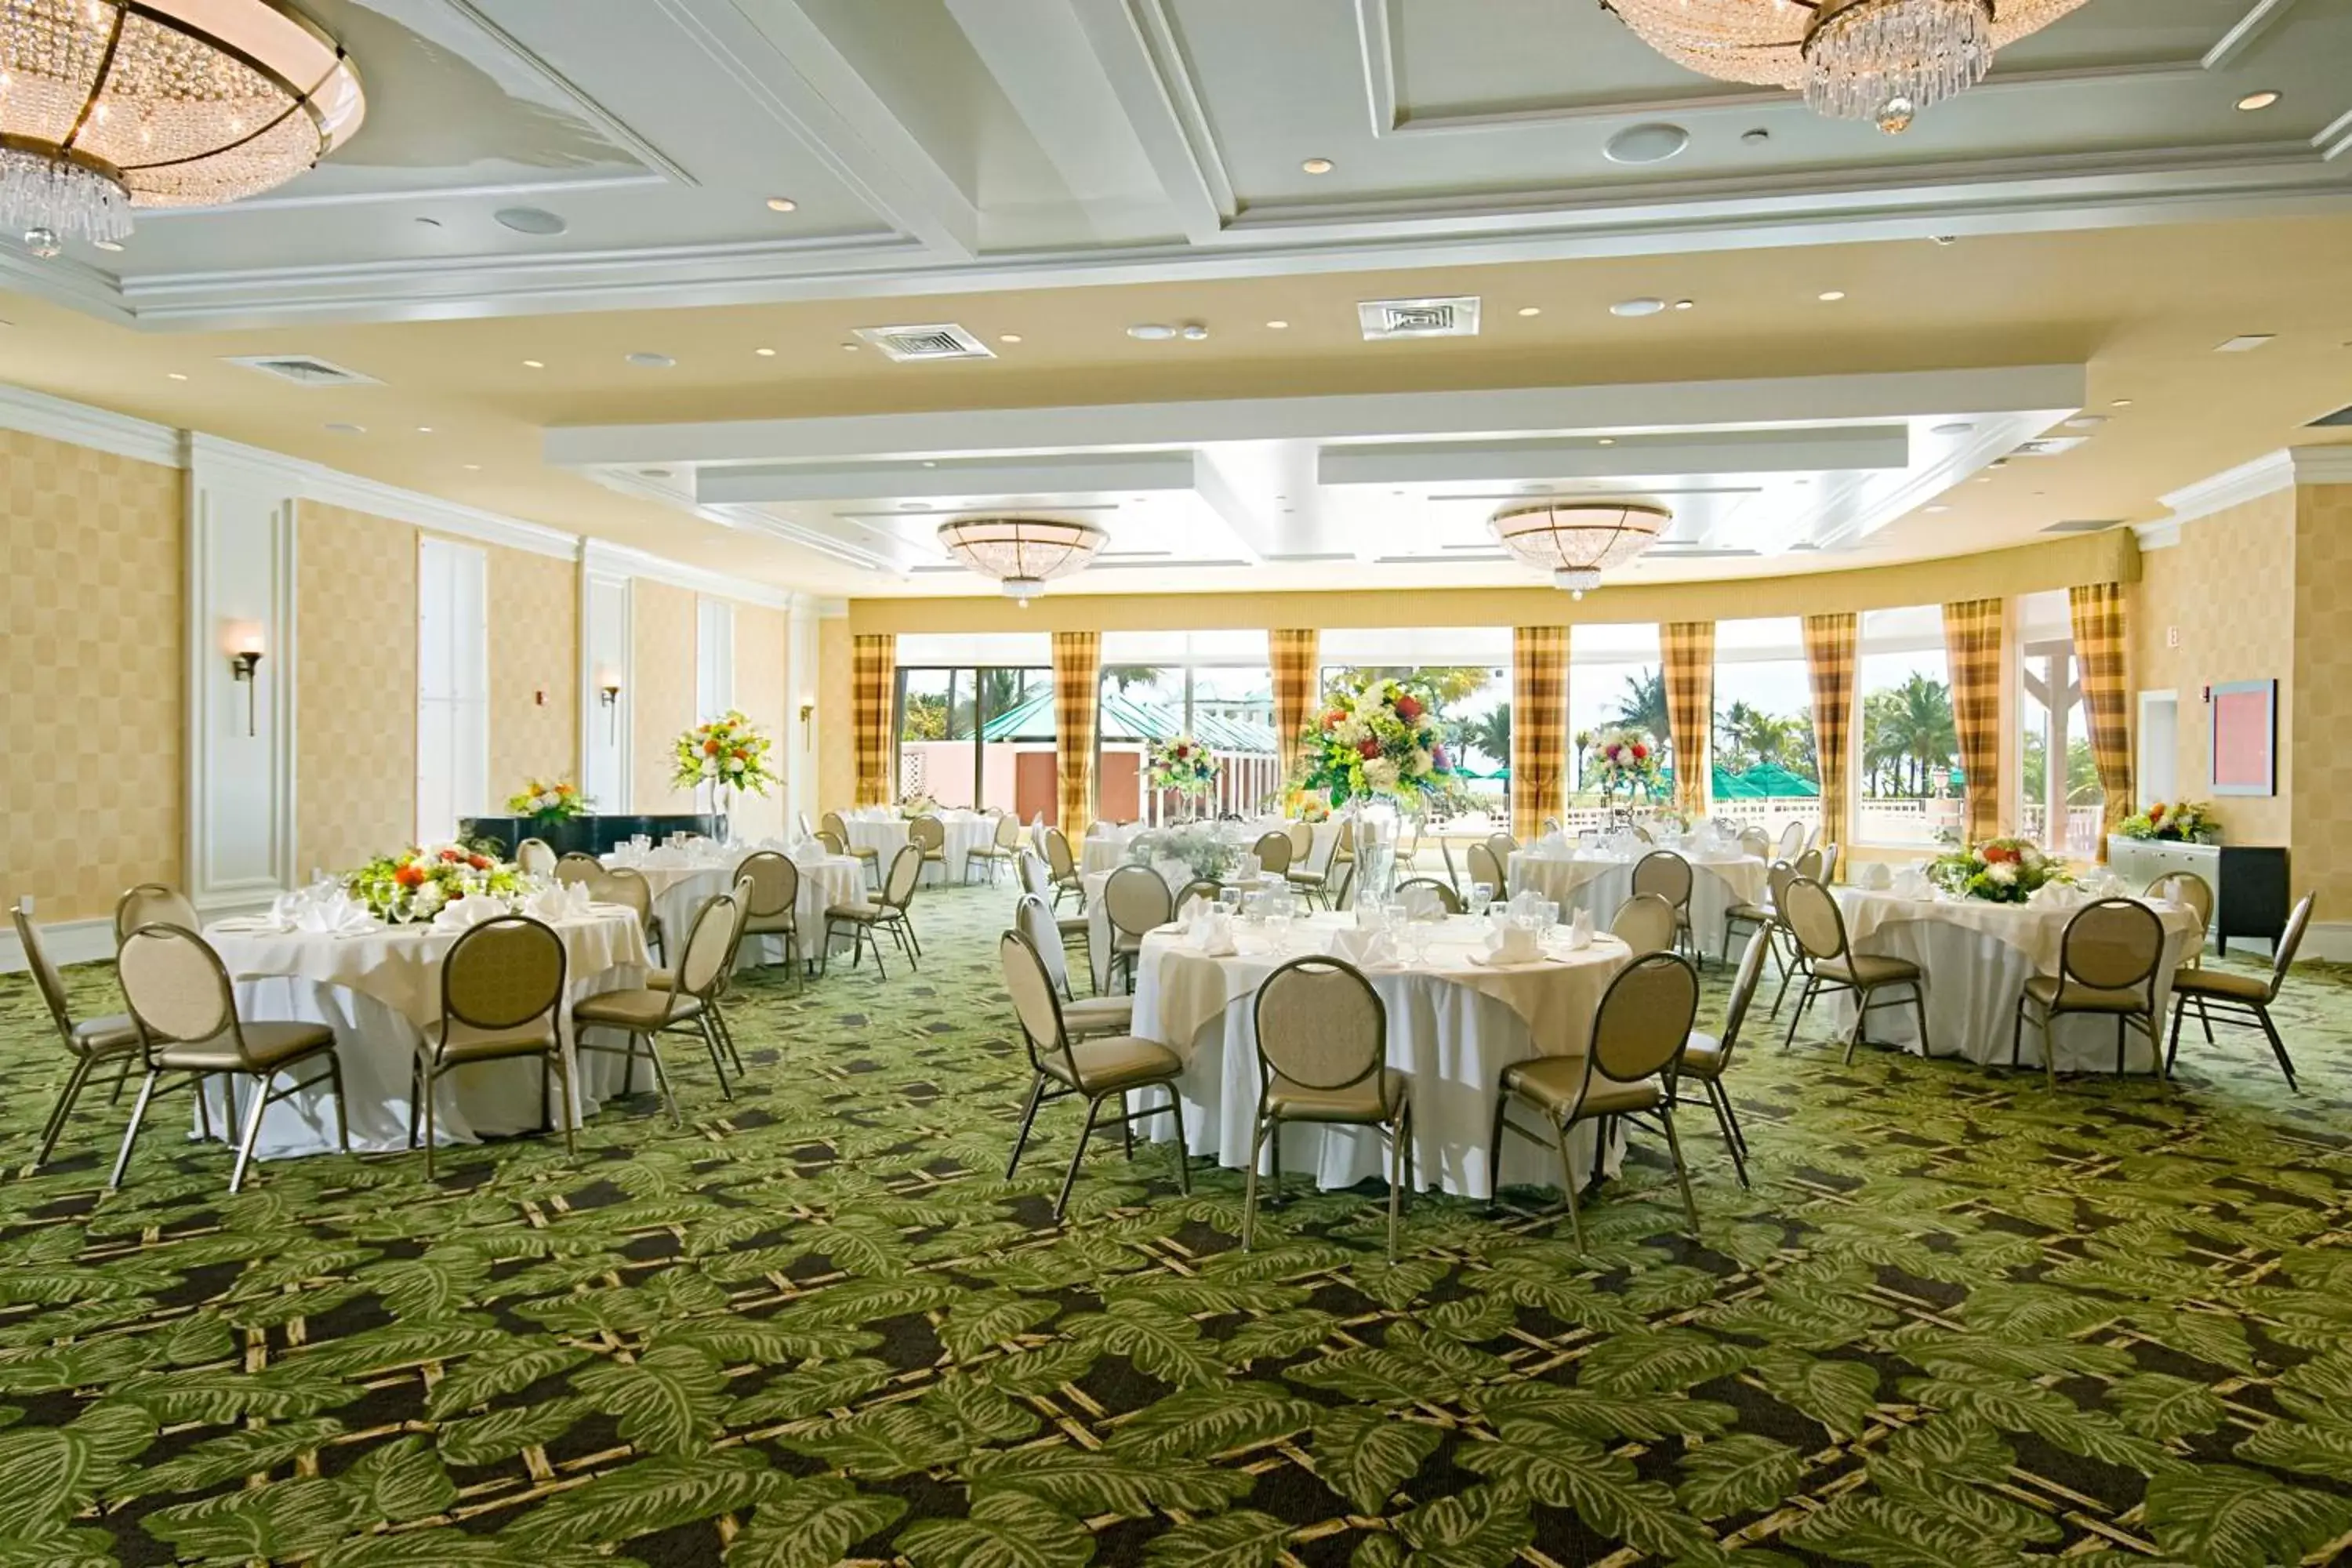 Banquet/Function facilities, Banquet Facilities in Sea View Hotel